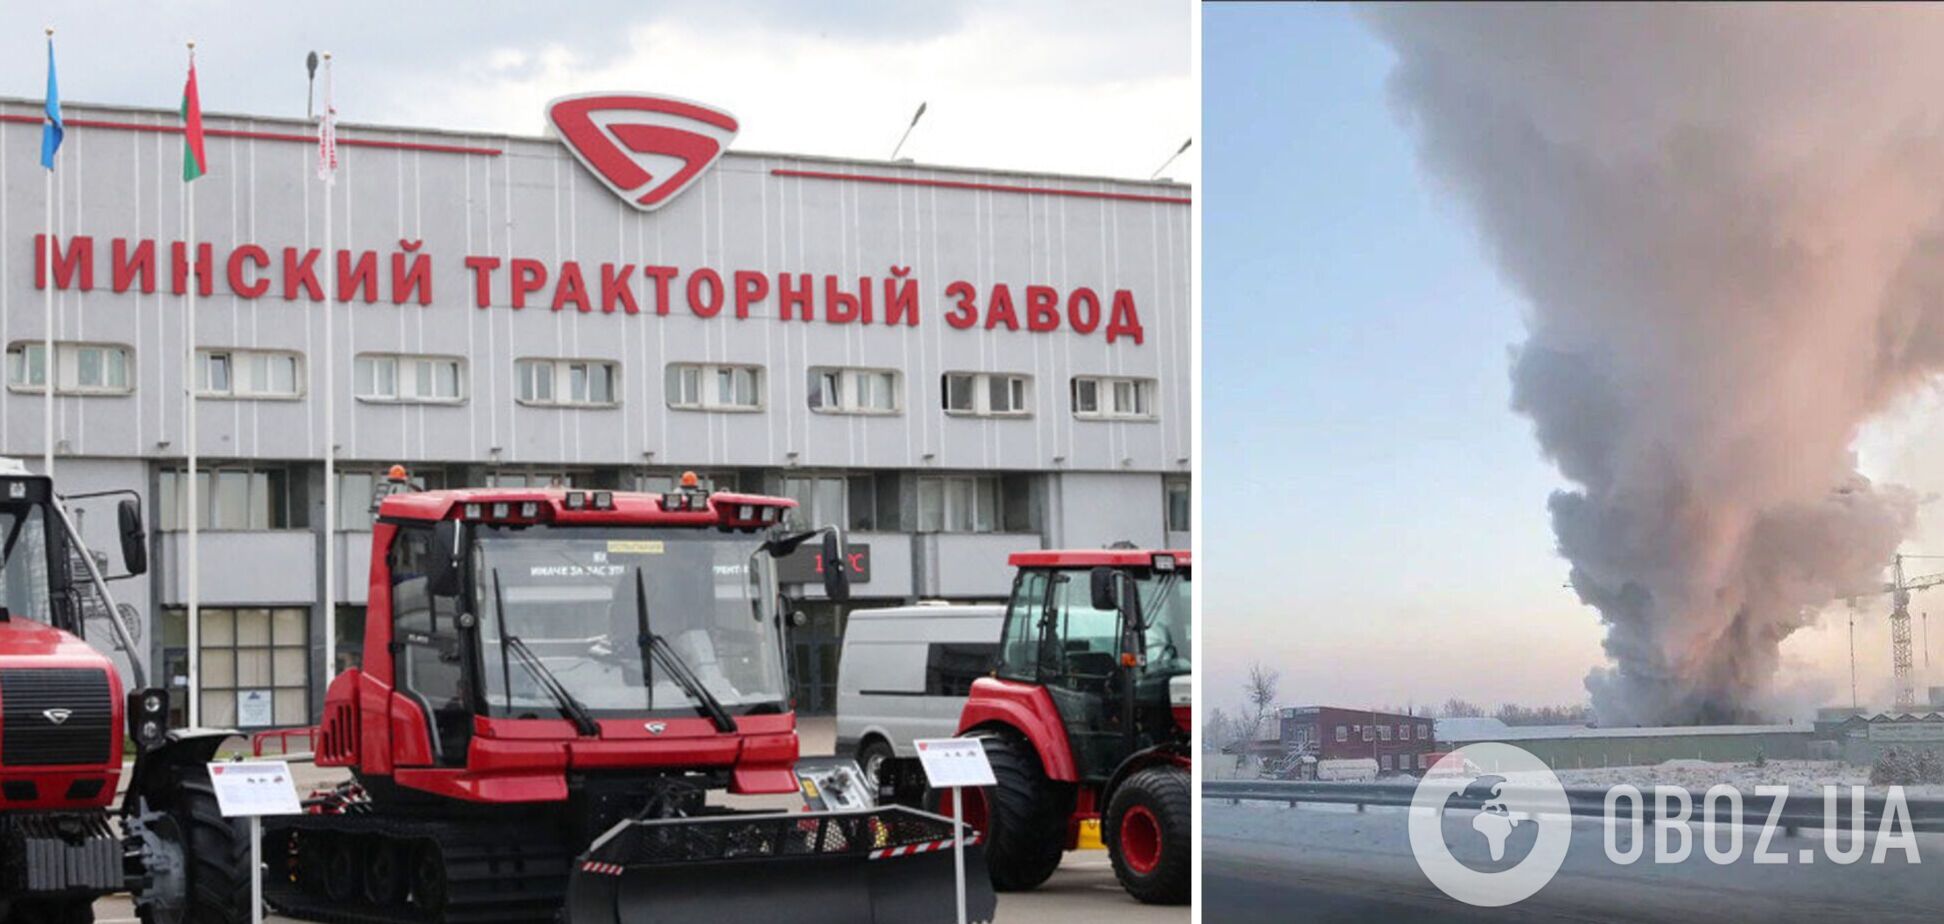 В Санкт-Петербурге вспыхнул мощный пожар, огонь охватил завод 'Беларусь МТЗ': есть погибшие. Видео